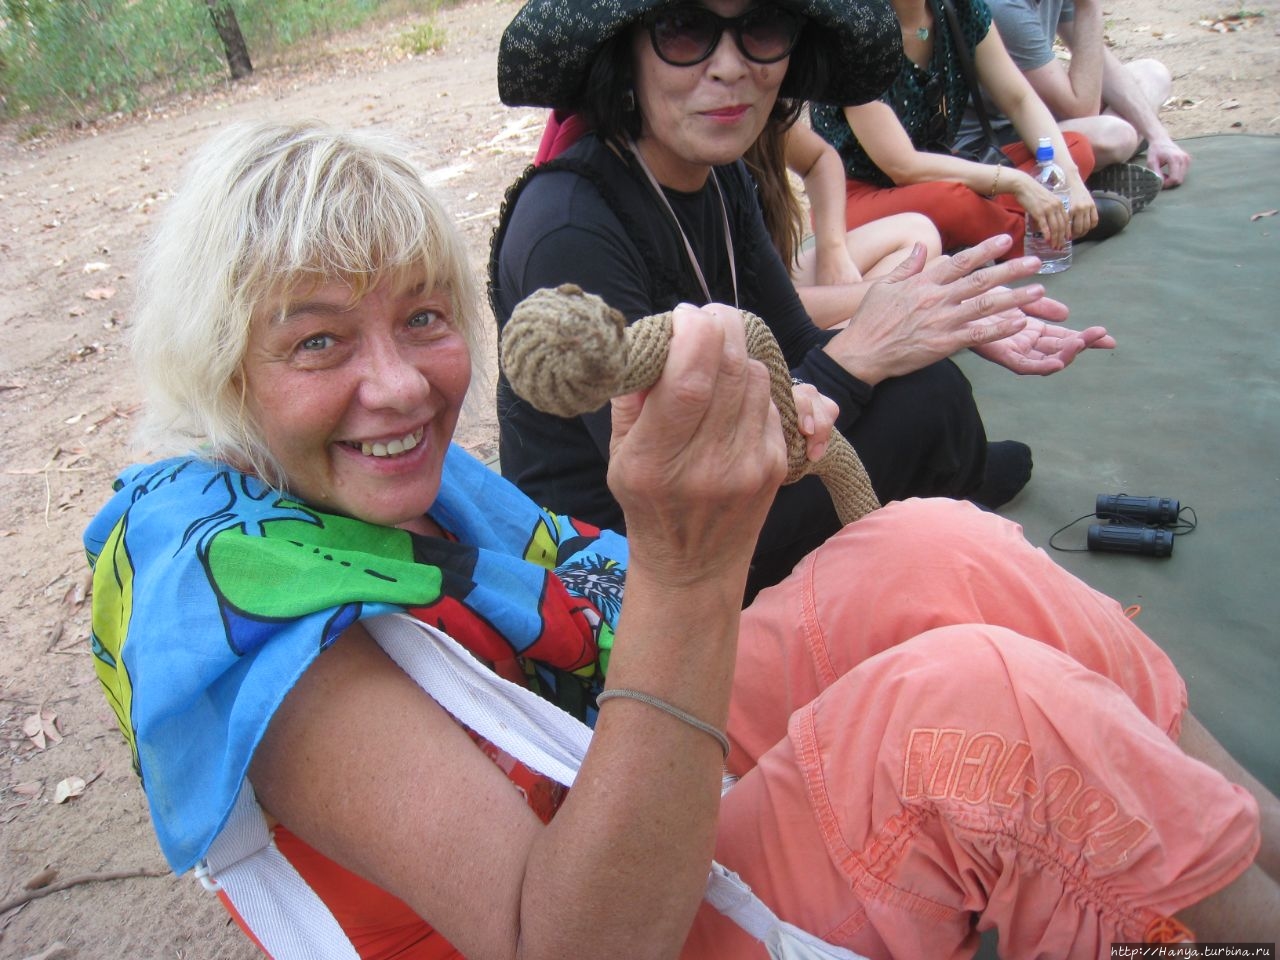 Культурный тур Pudakul Aboriginal Ламбеллс-Лагун, Австралия